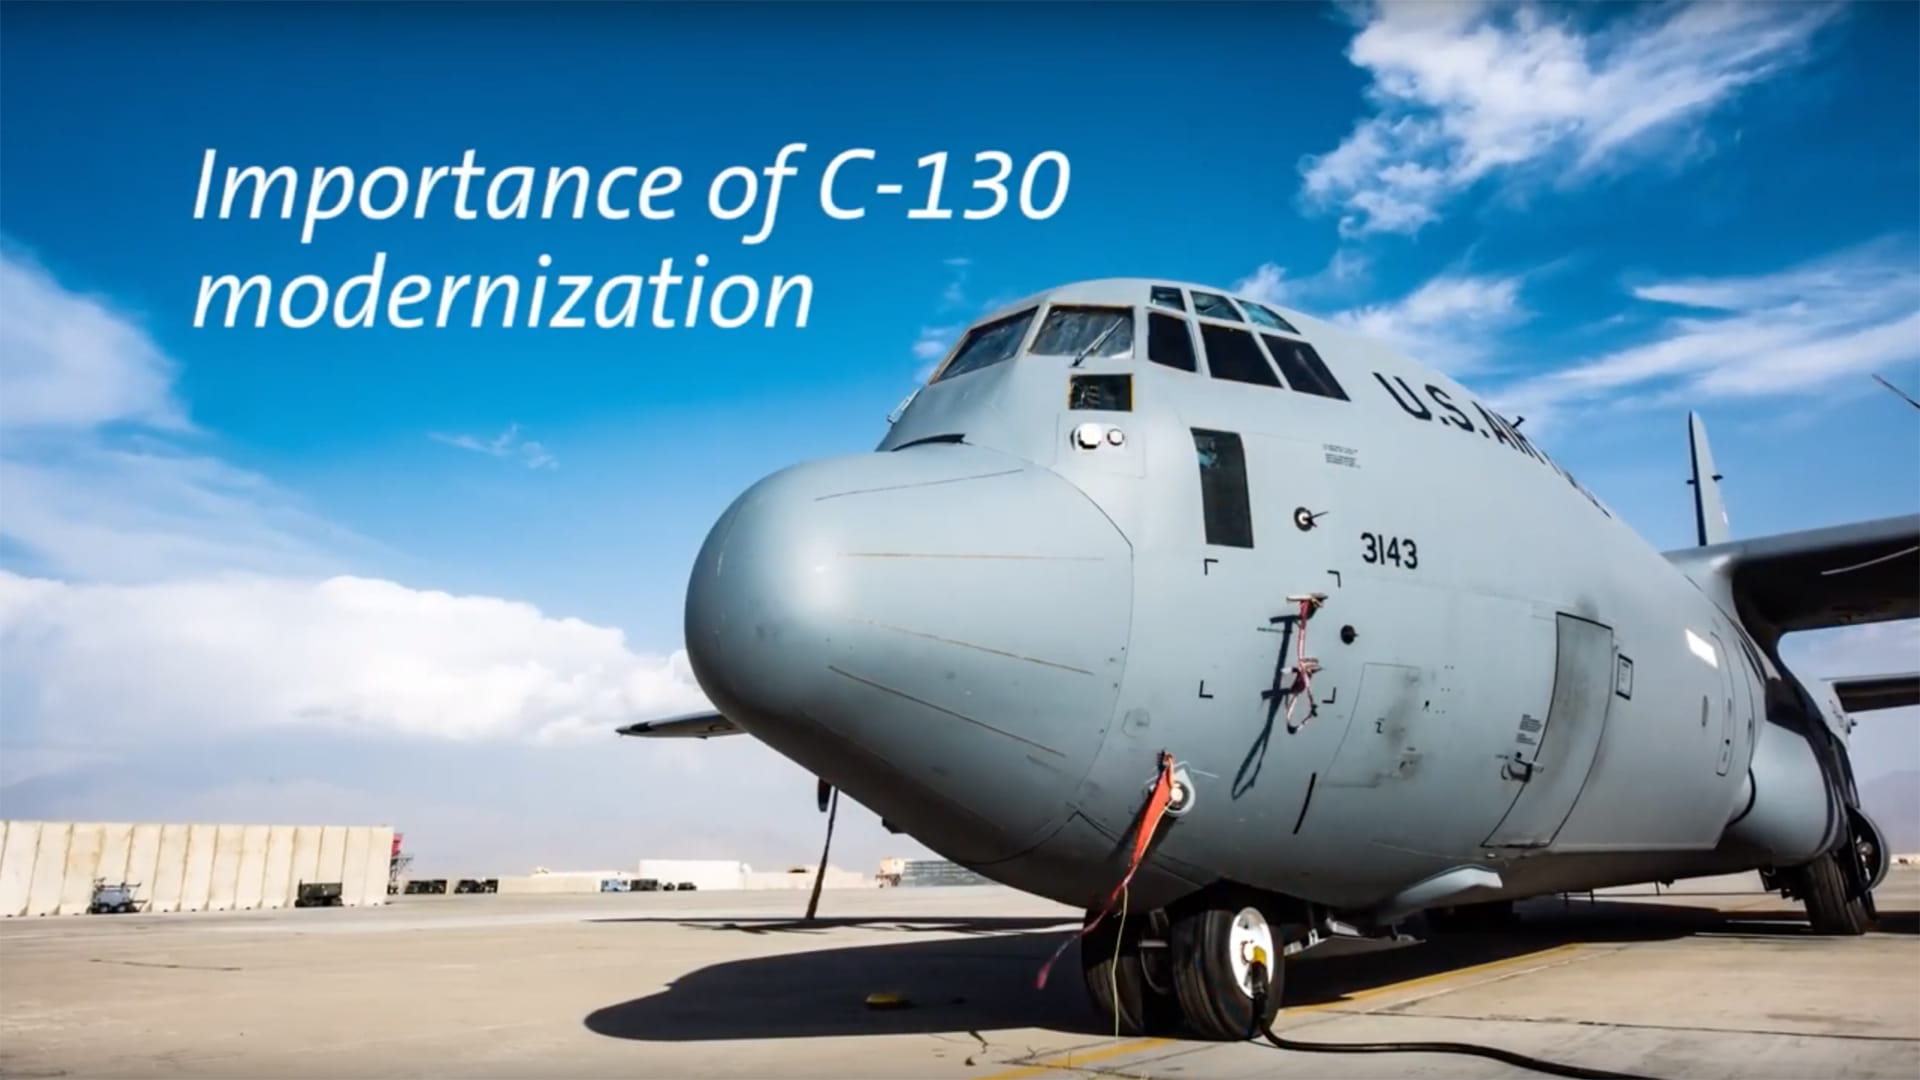 C-130 Modernization